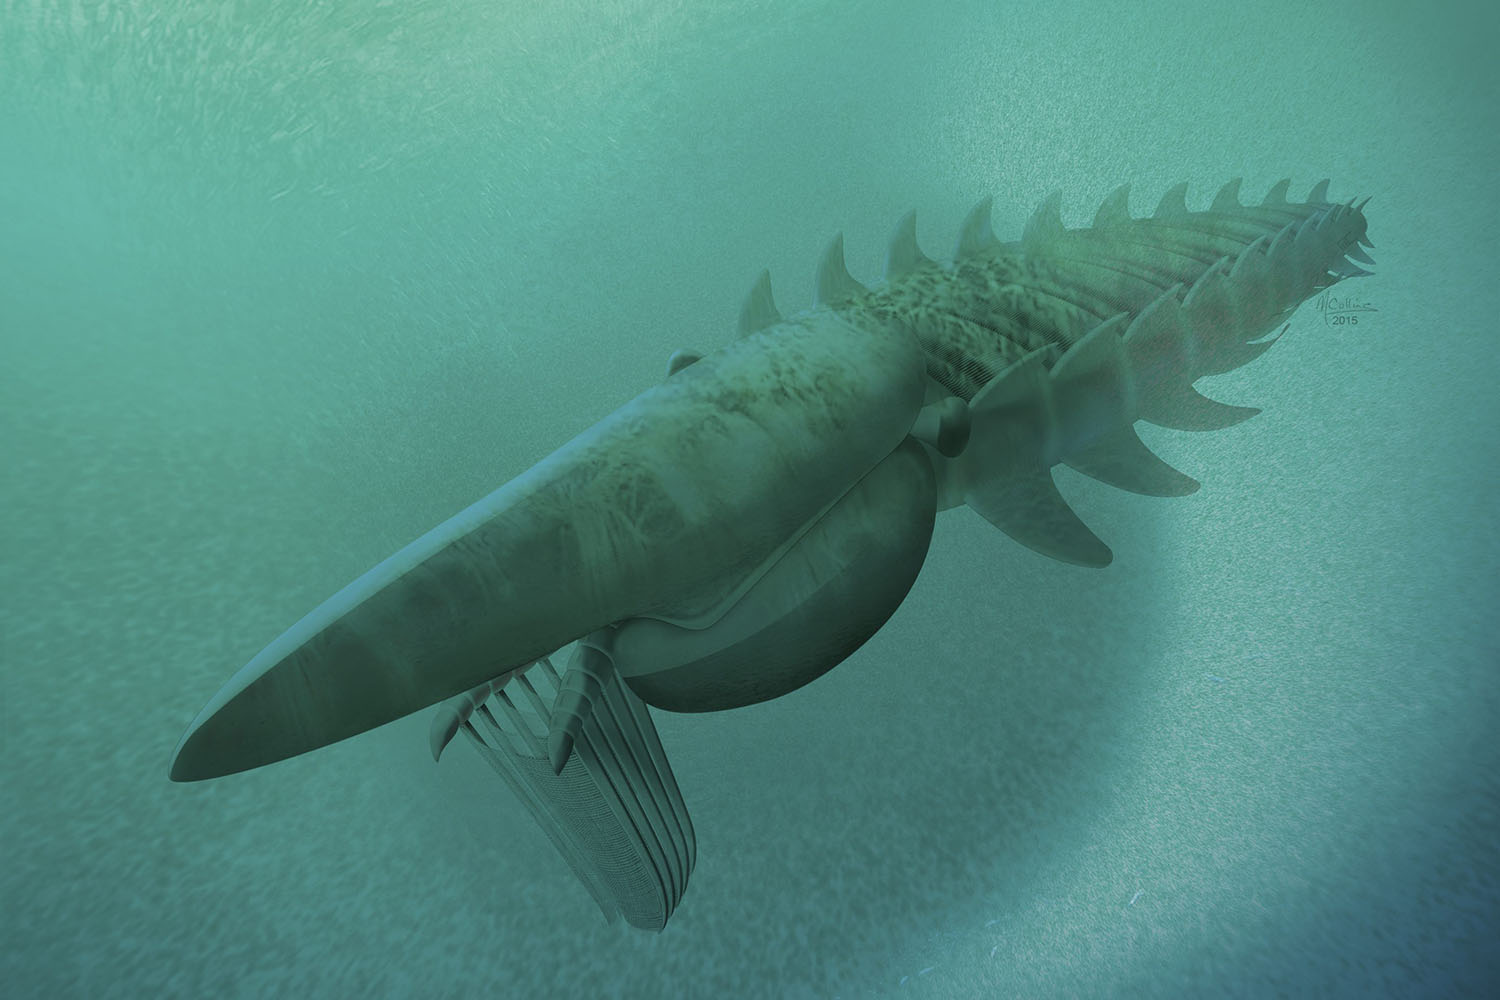 Descubren un monstruo marino de 2 metros de largo